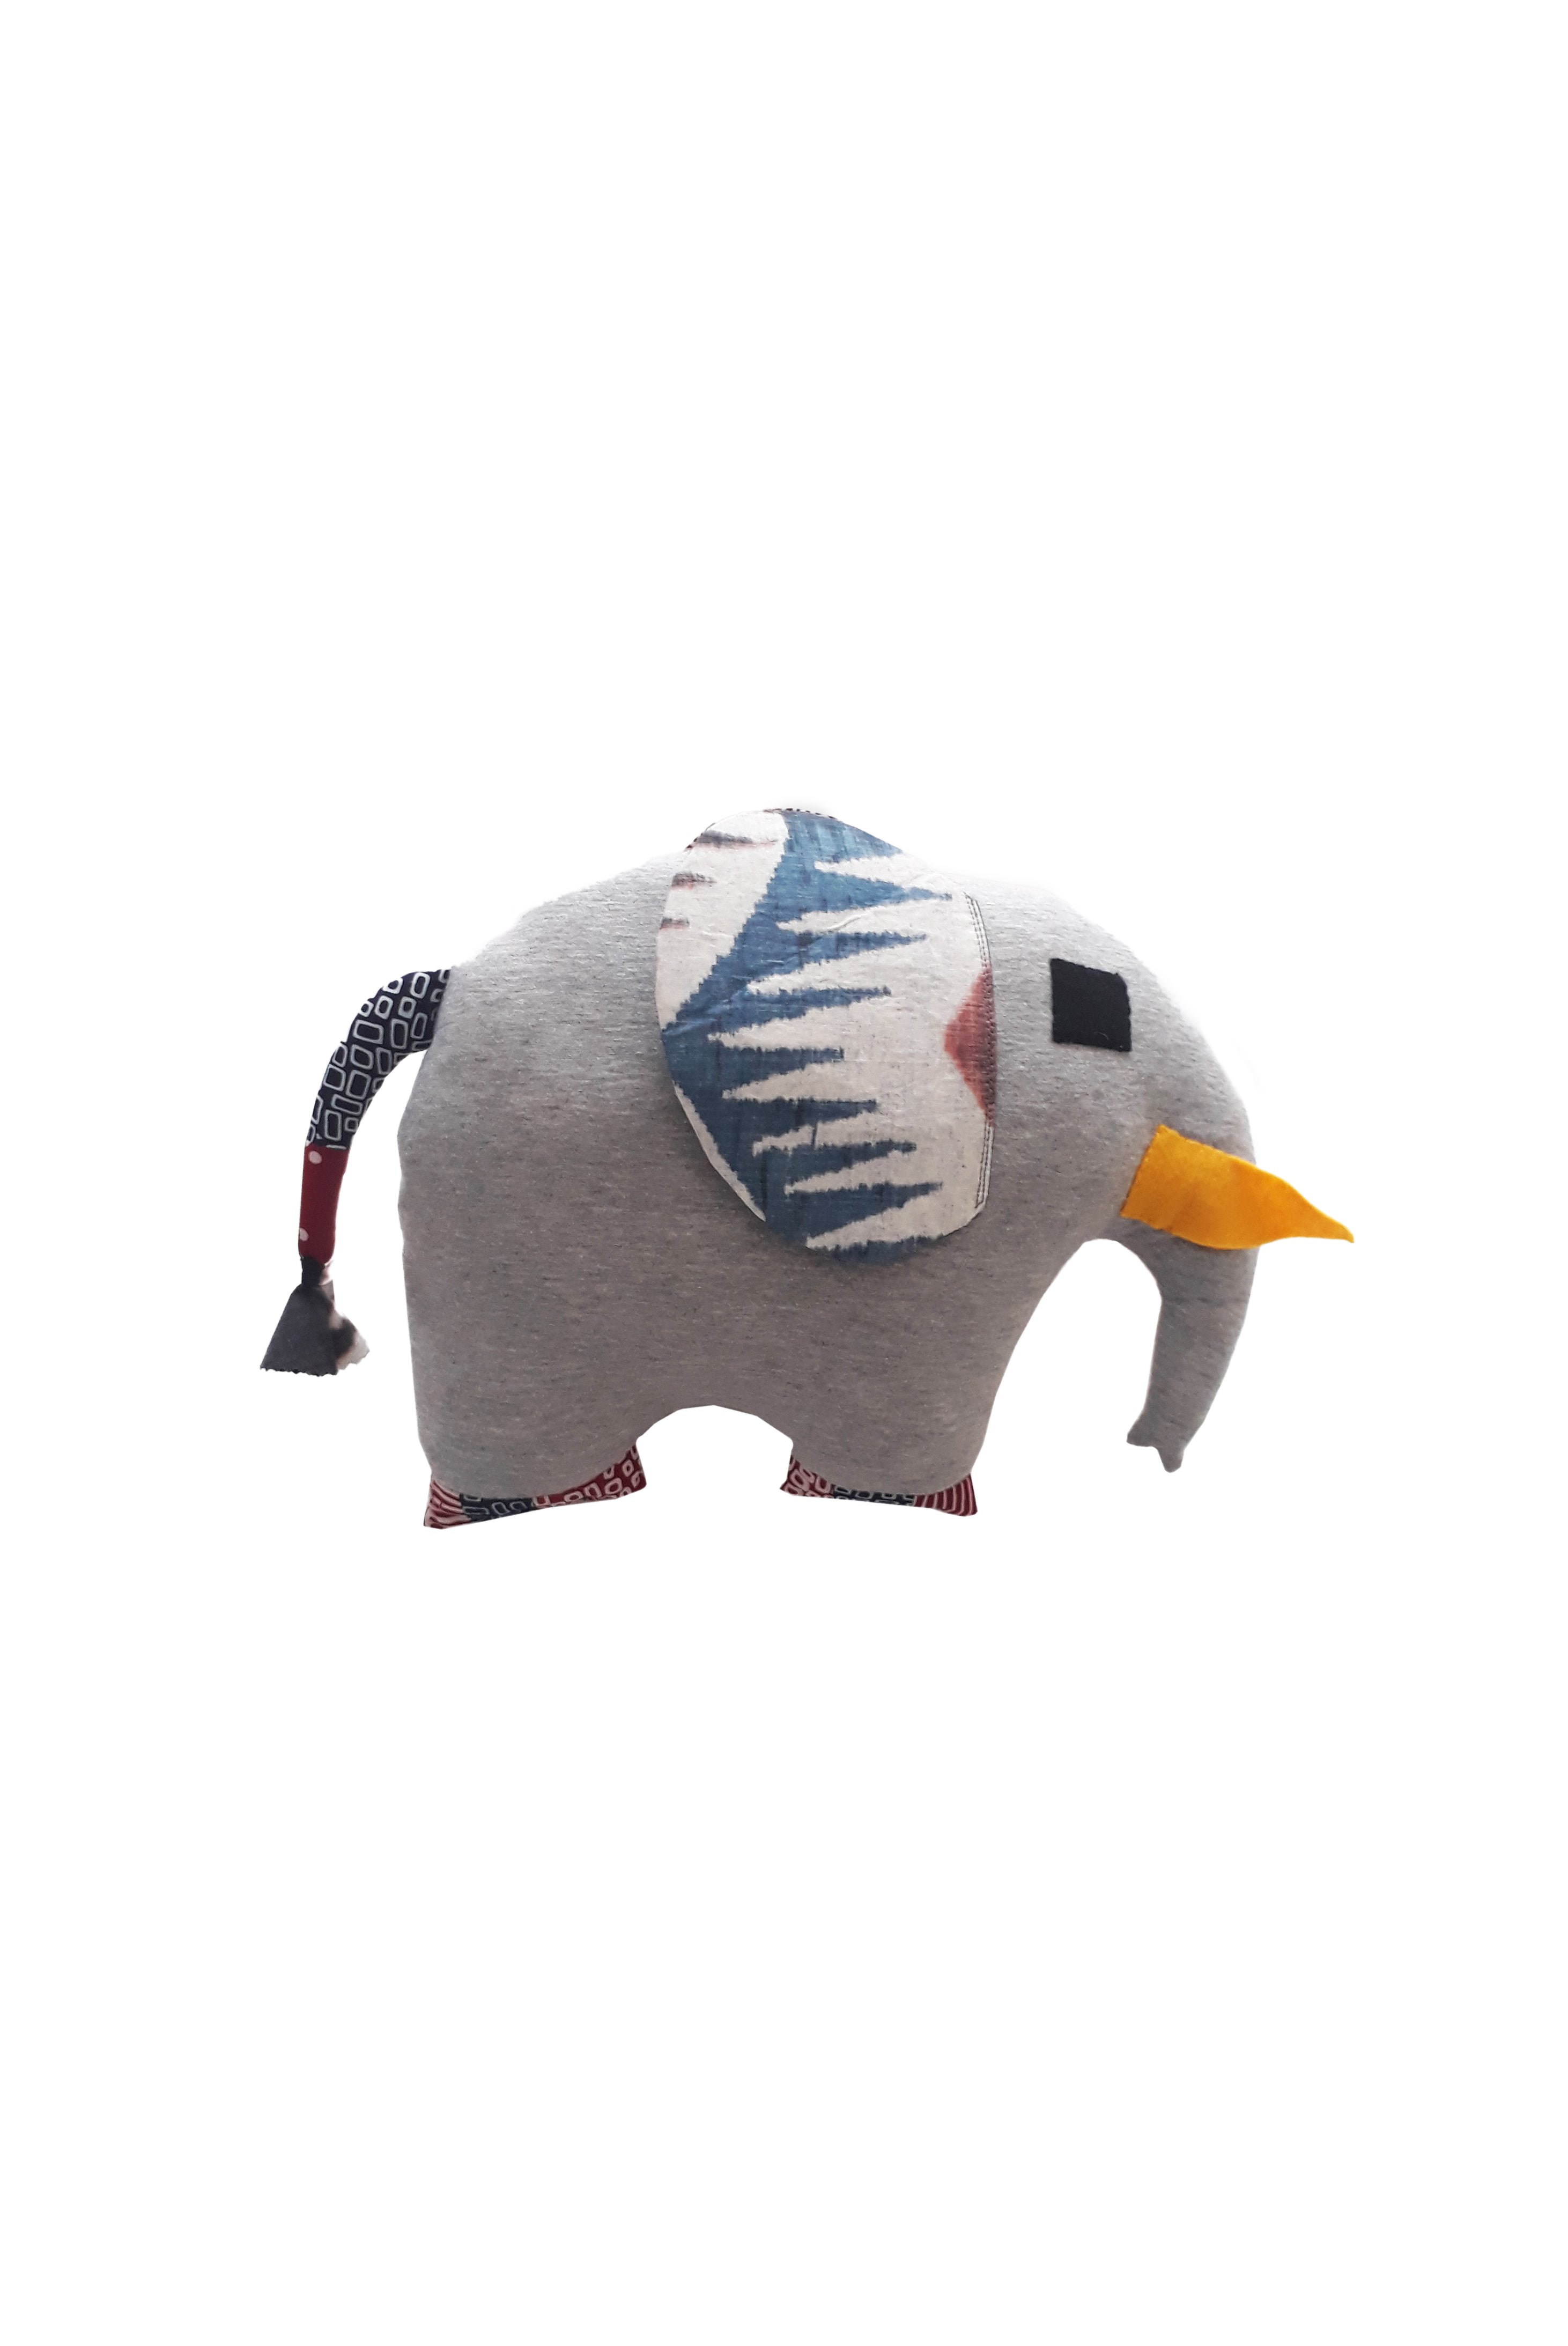 Gajah - Doll